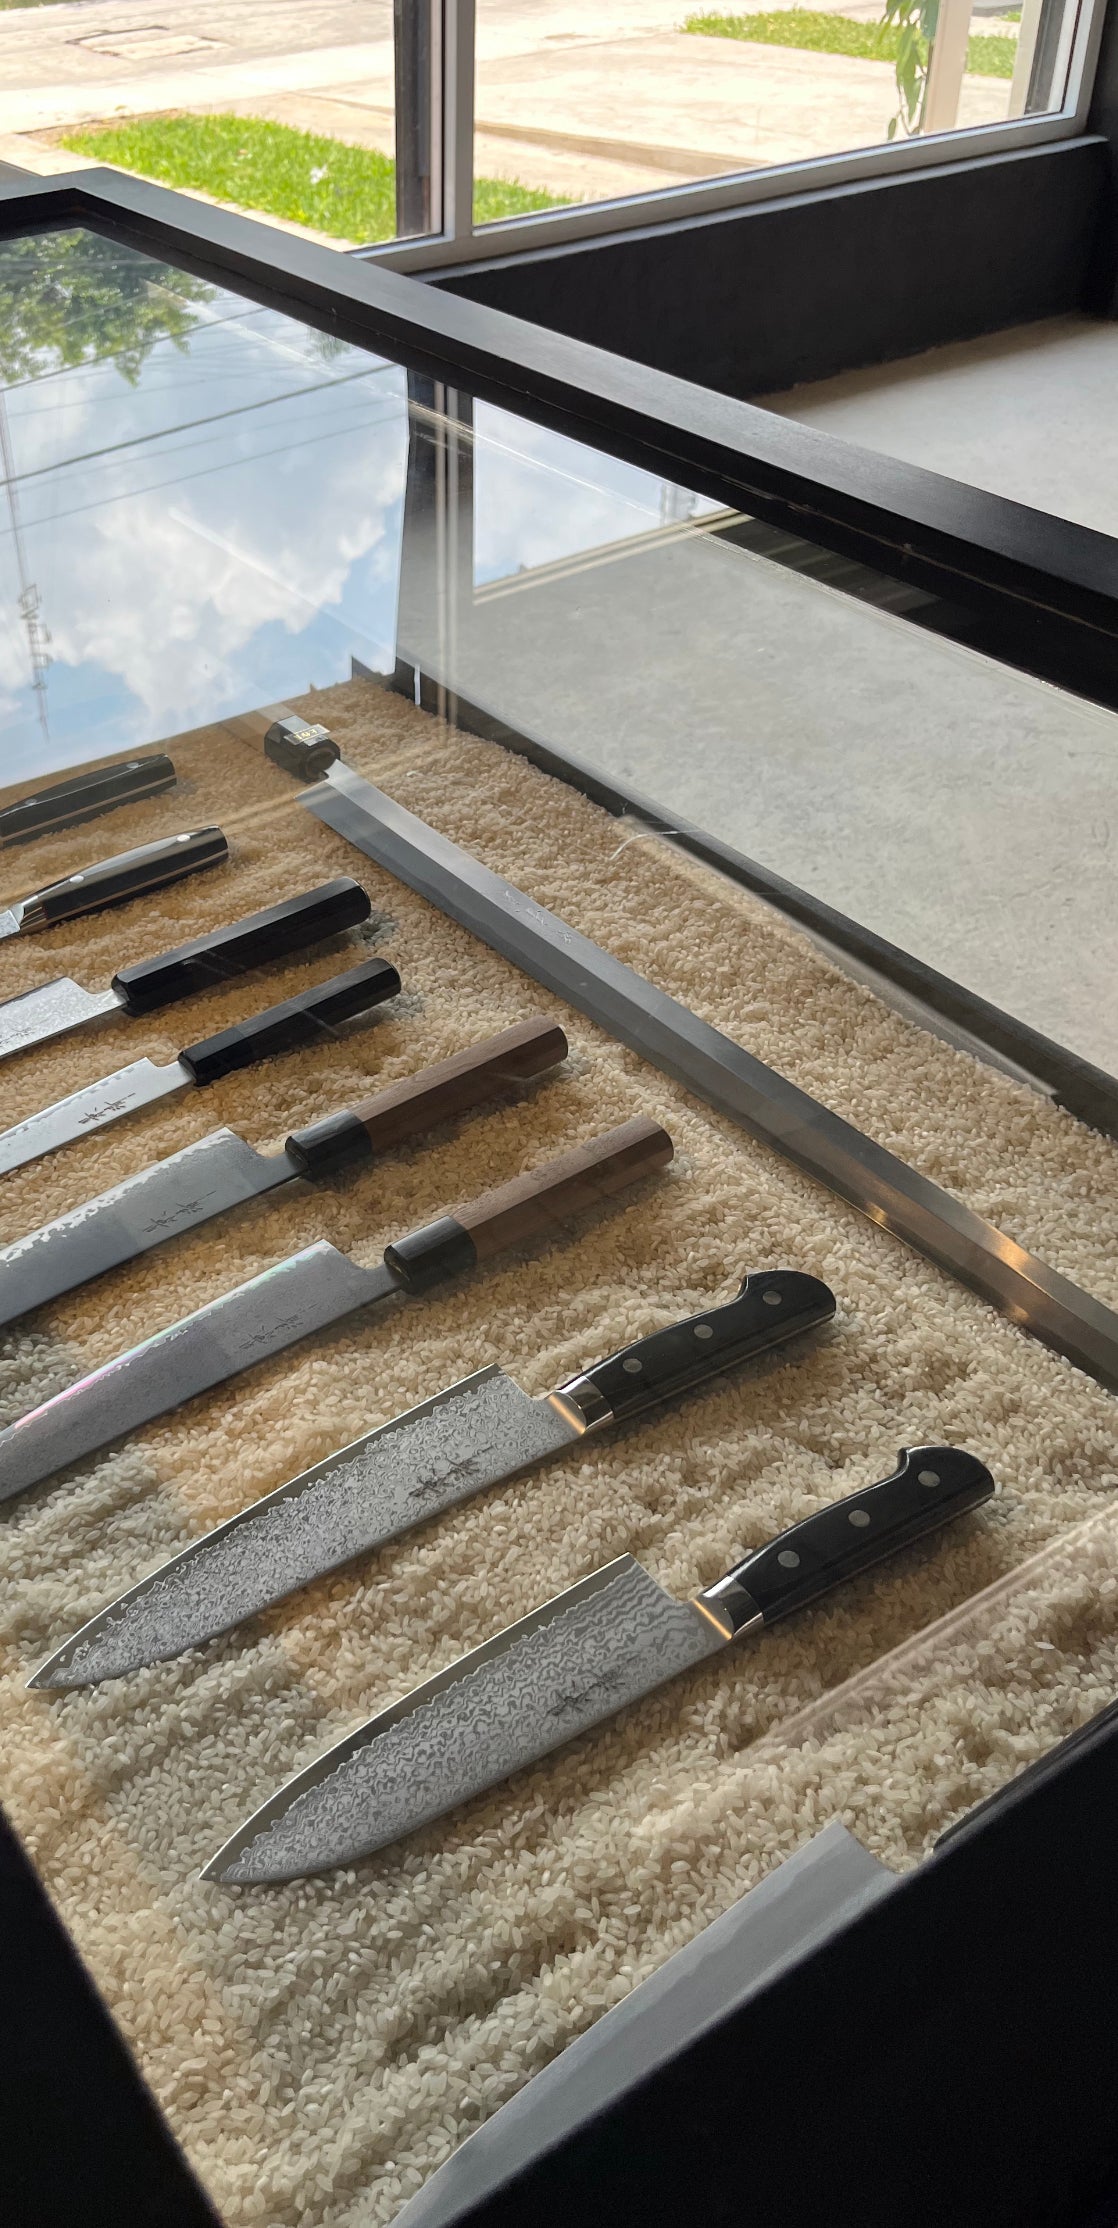 El arte de los cuchillos japones – HINATAMX